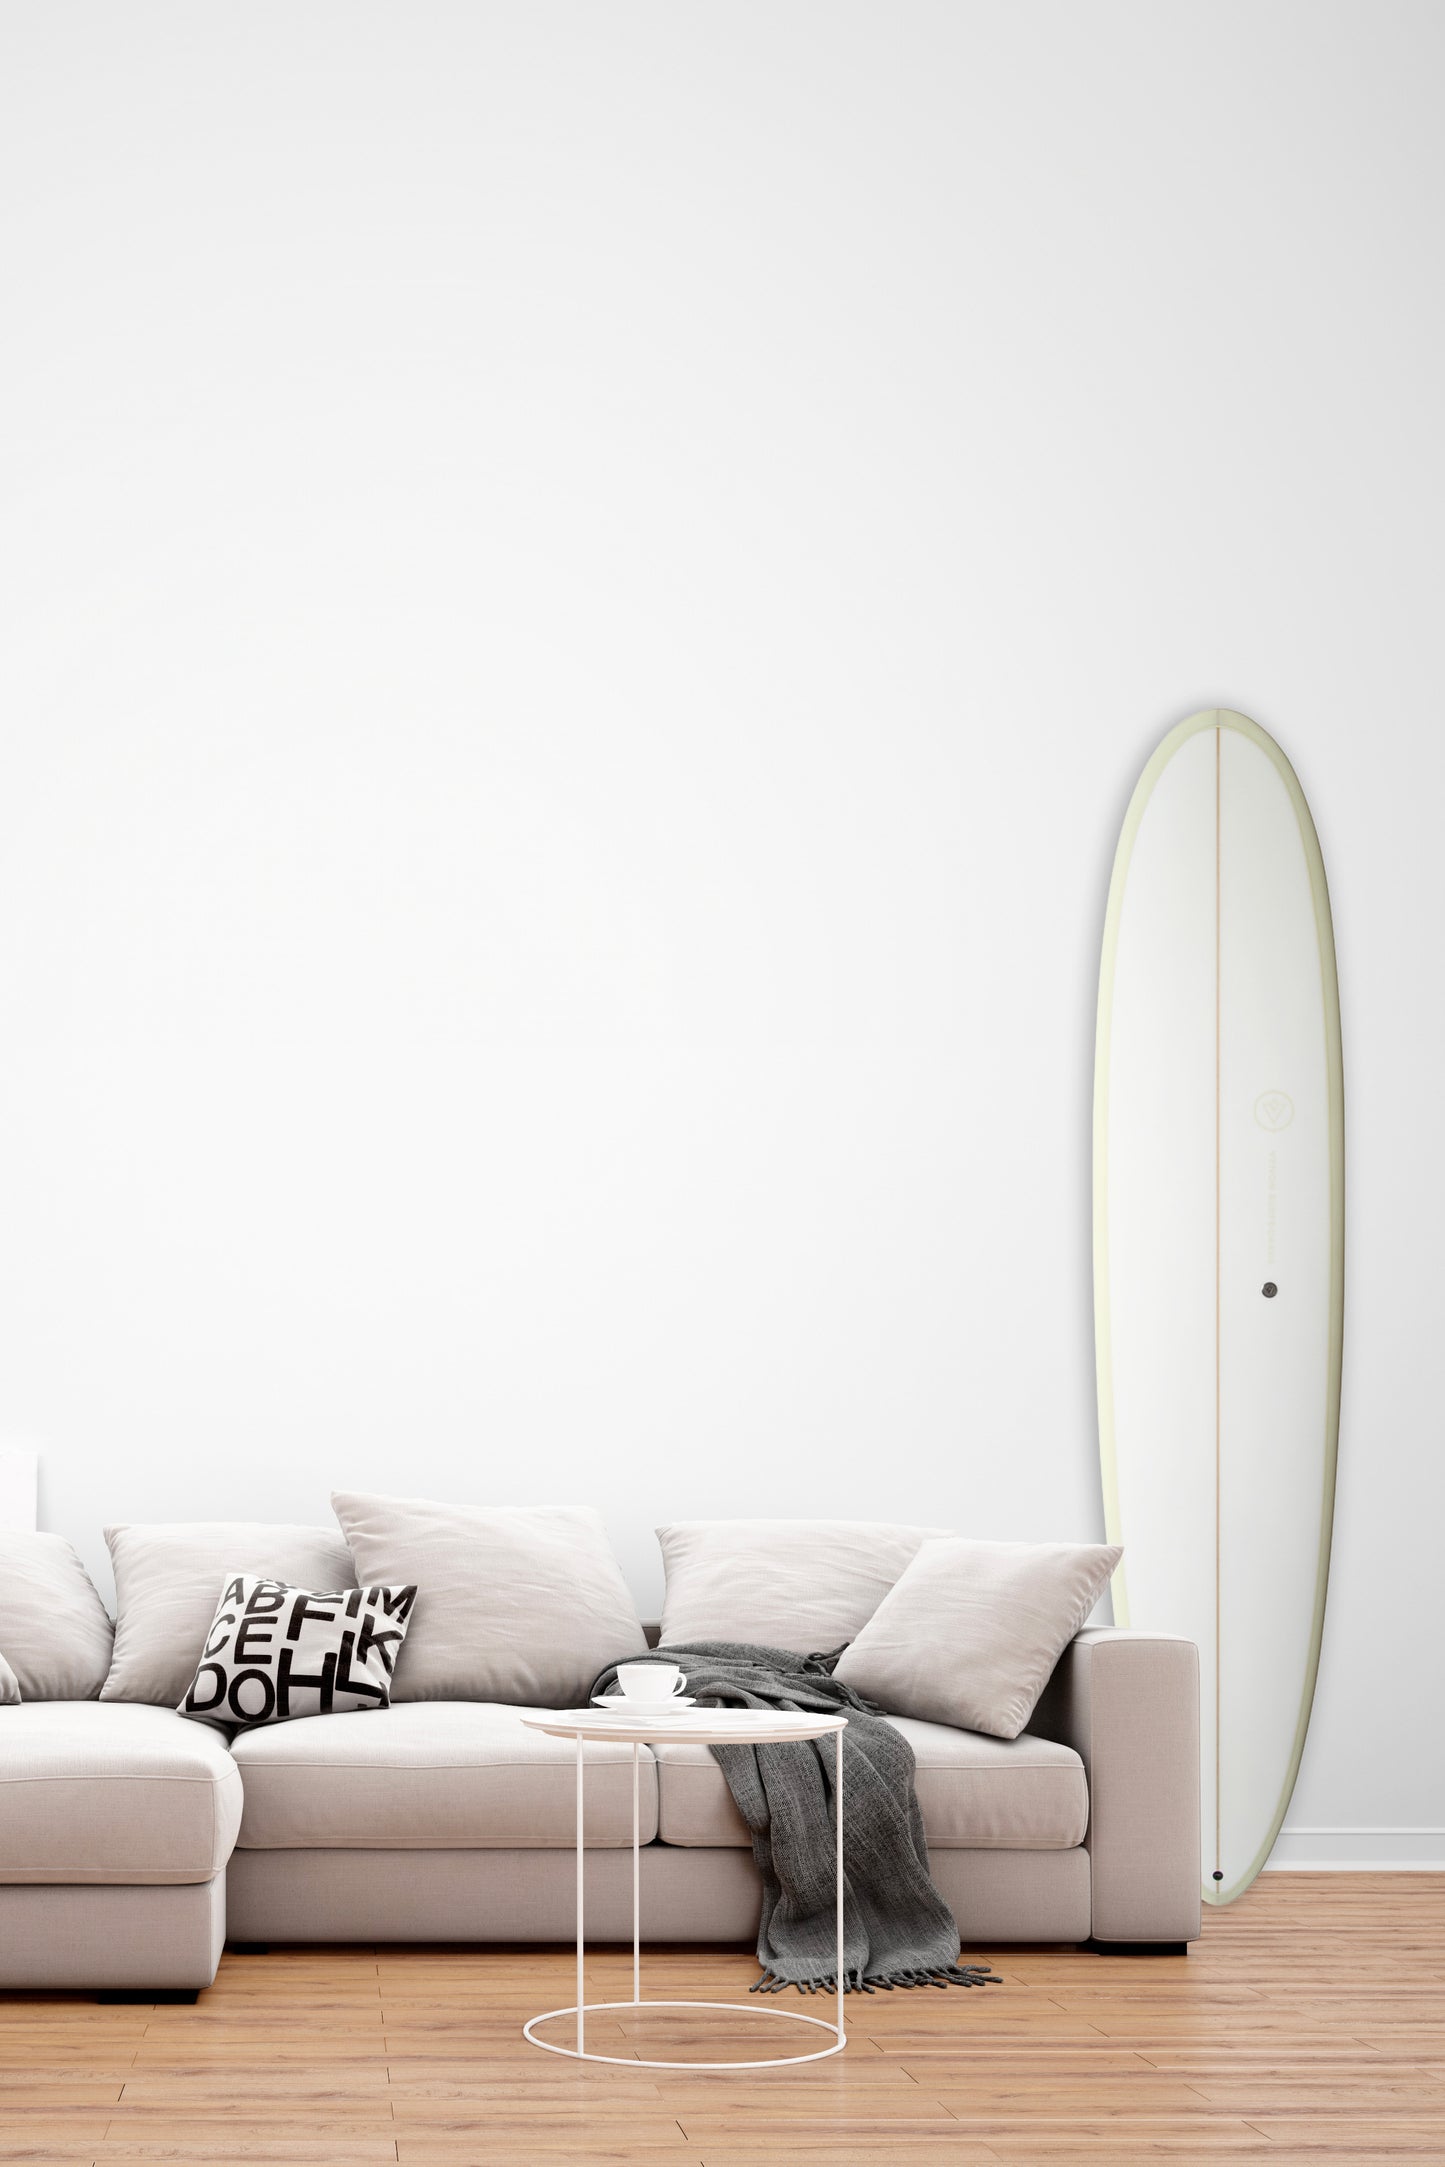 Decoration Surfboard - Volute - White Deck Cream